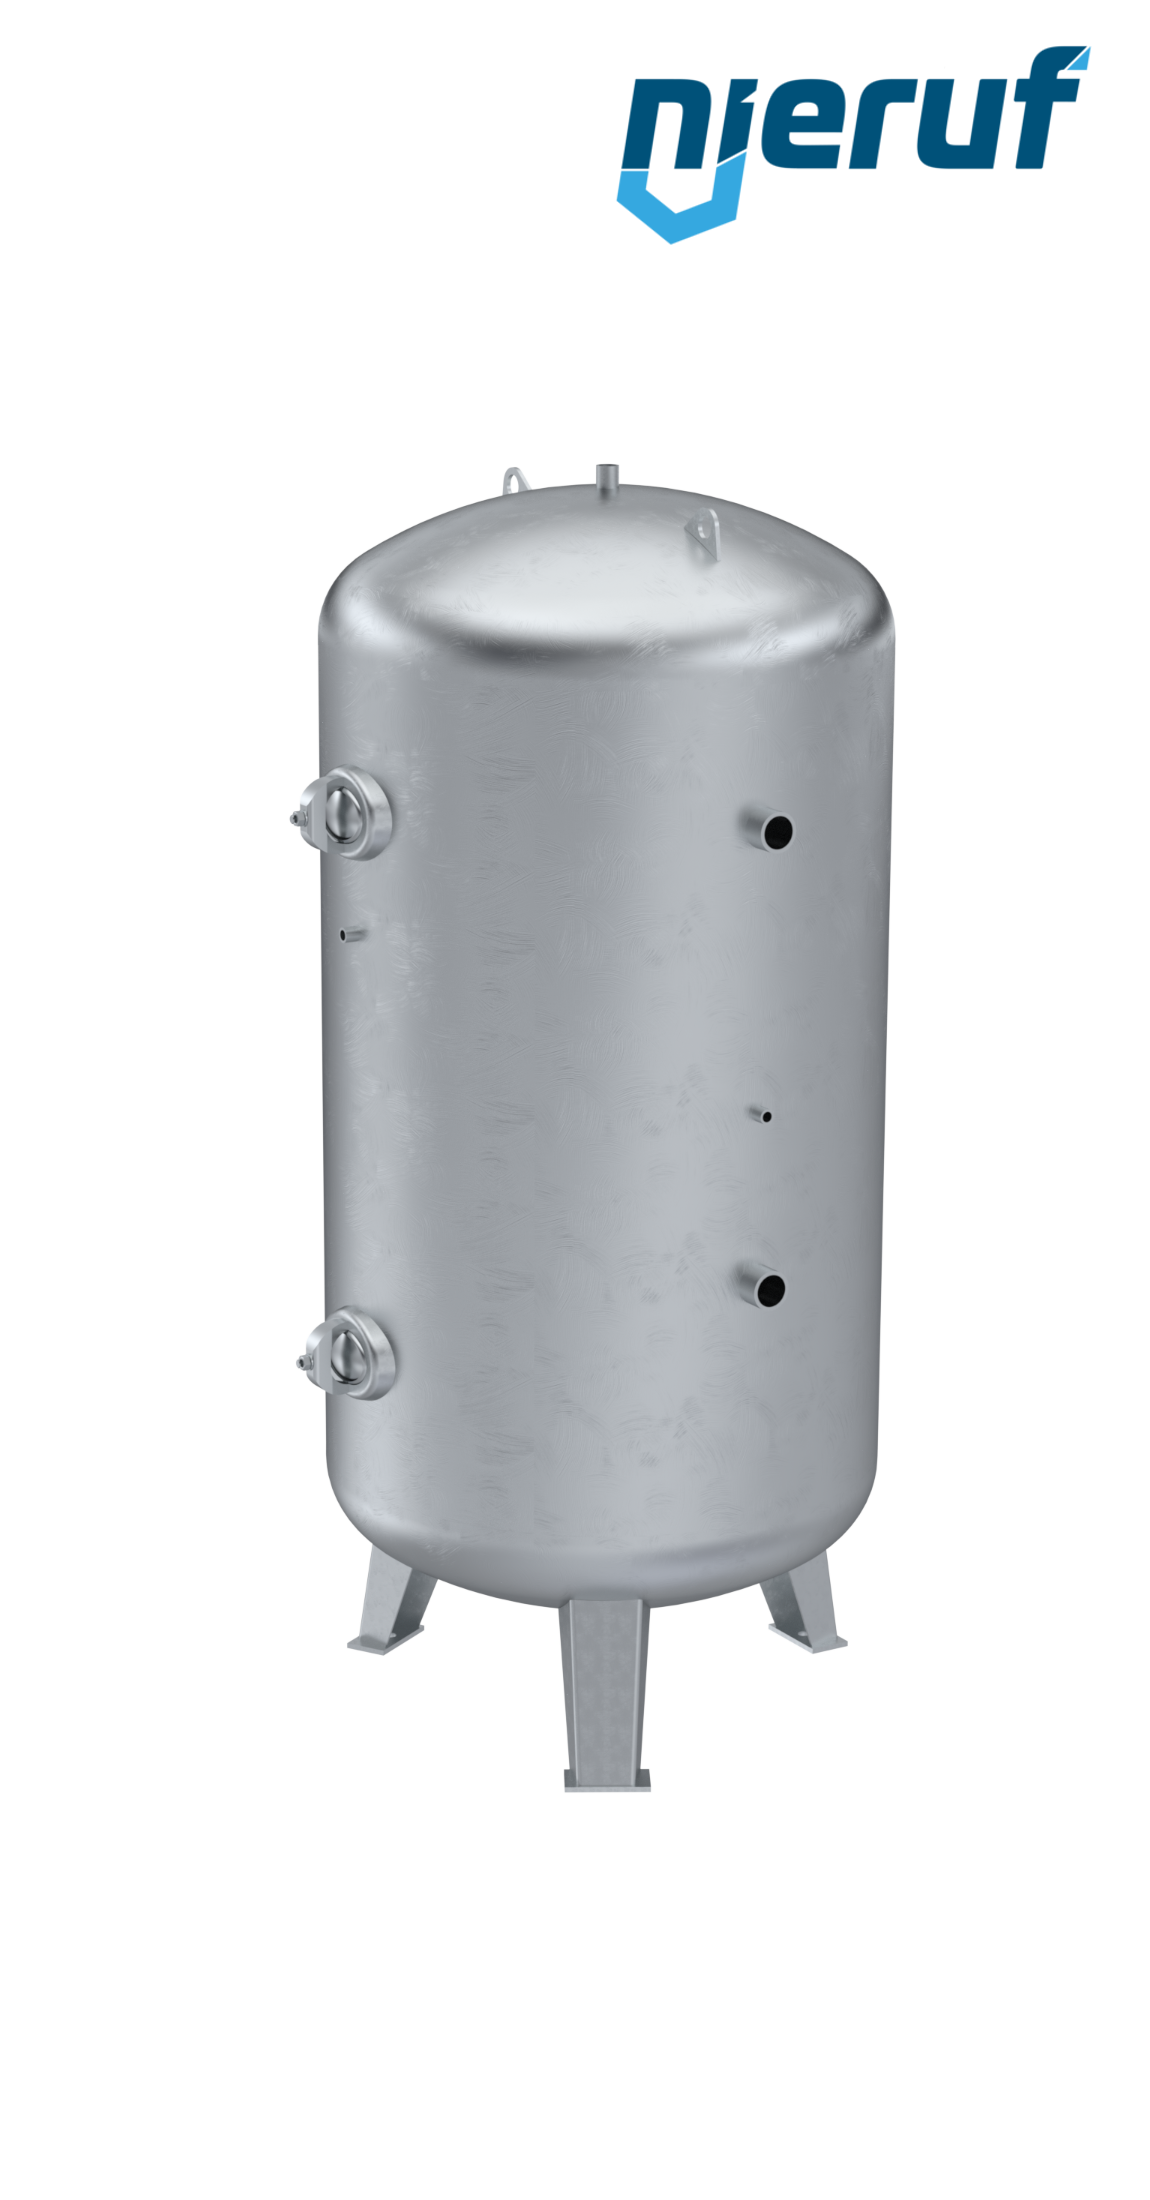 Serbatoio a pressione verticale BE01 5000 litri, 0-11 bar, acciaio primerizzato, diametro 1600 mm